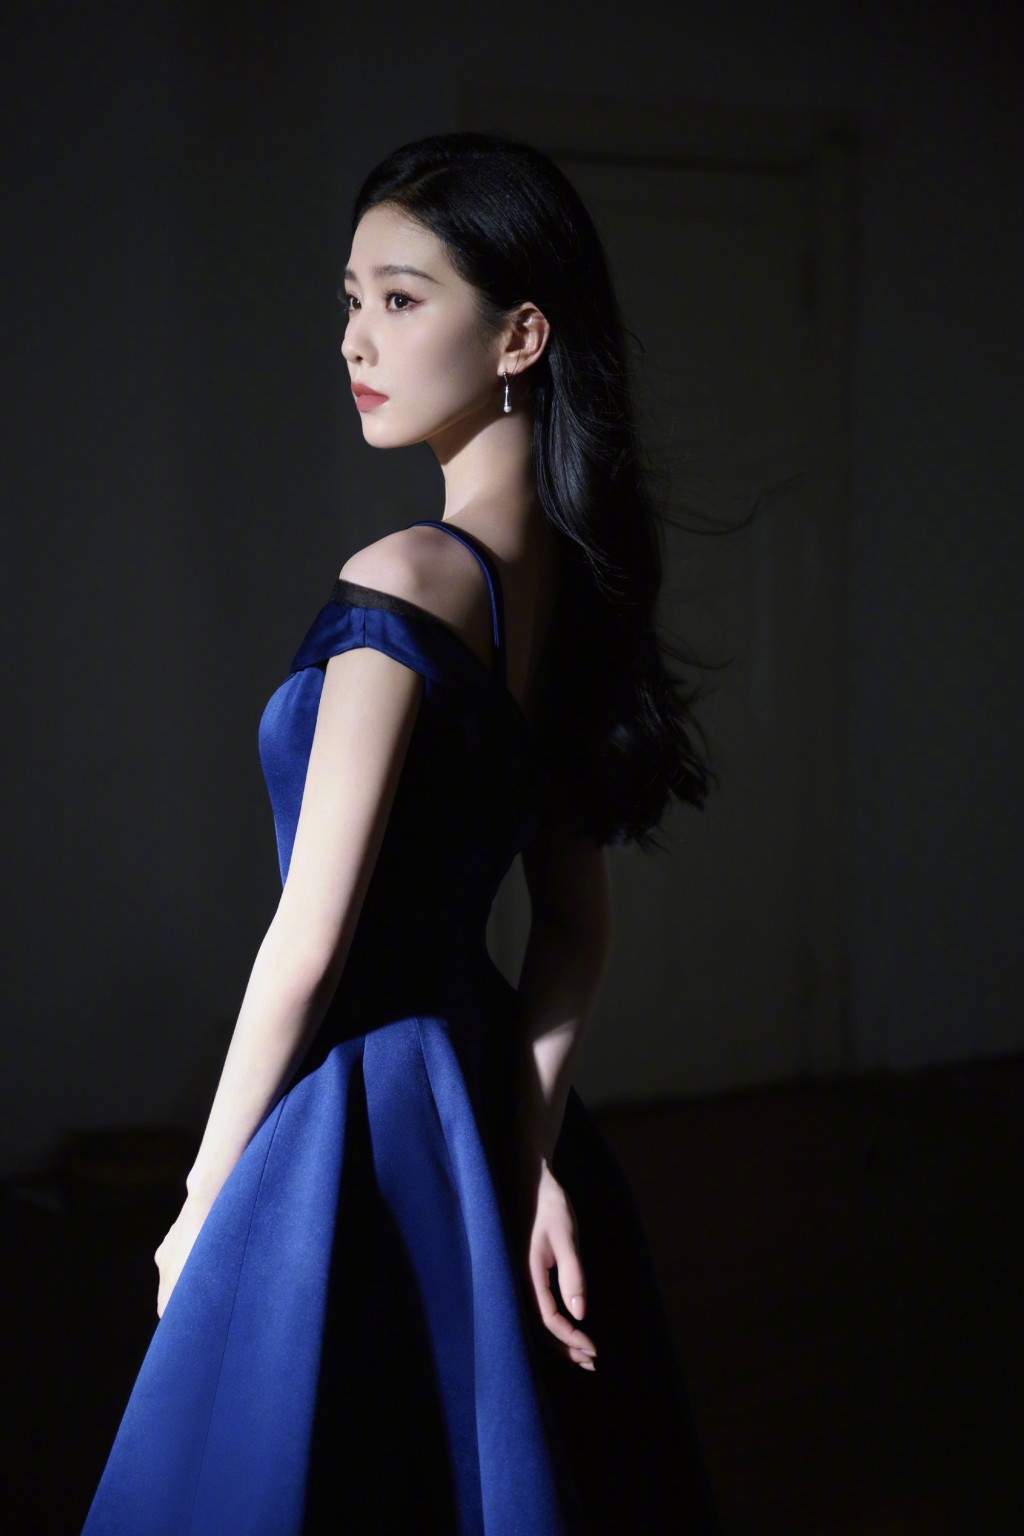 刘诗诗蓝色长裙优雅淡然写真图片